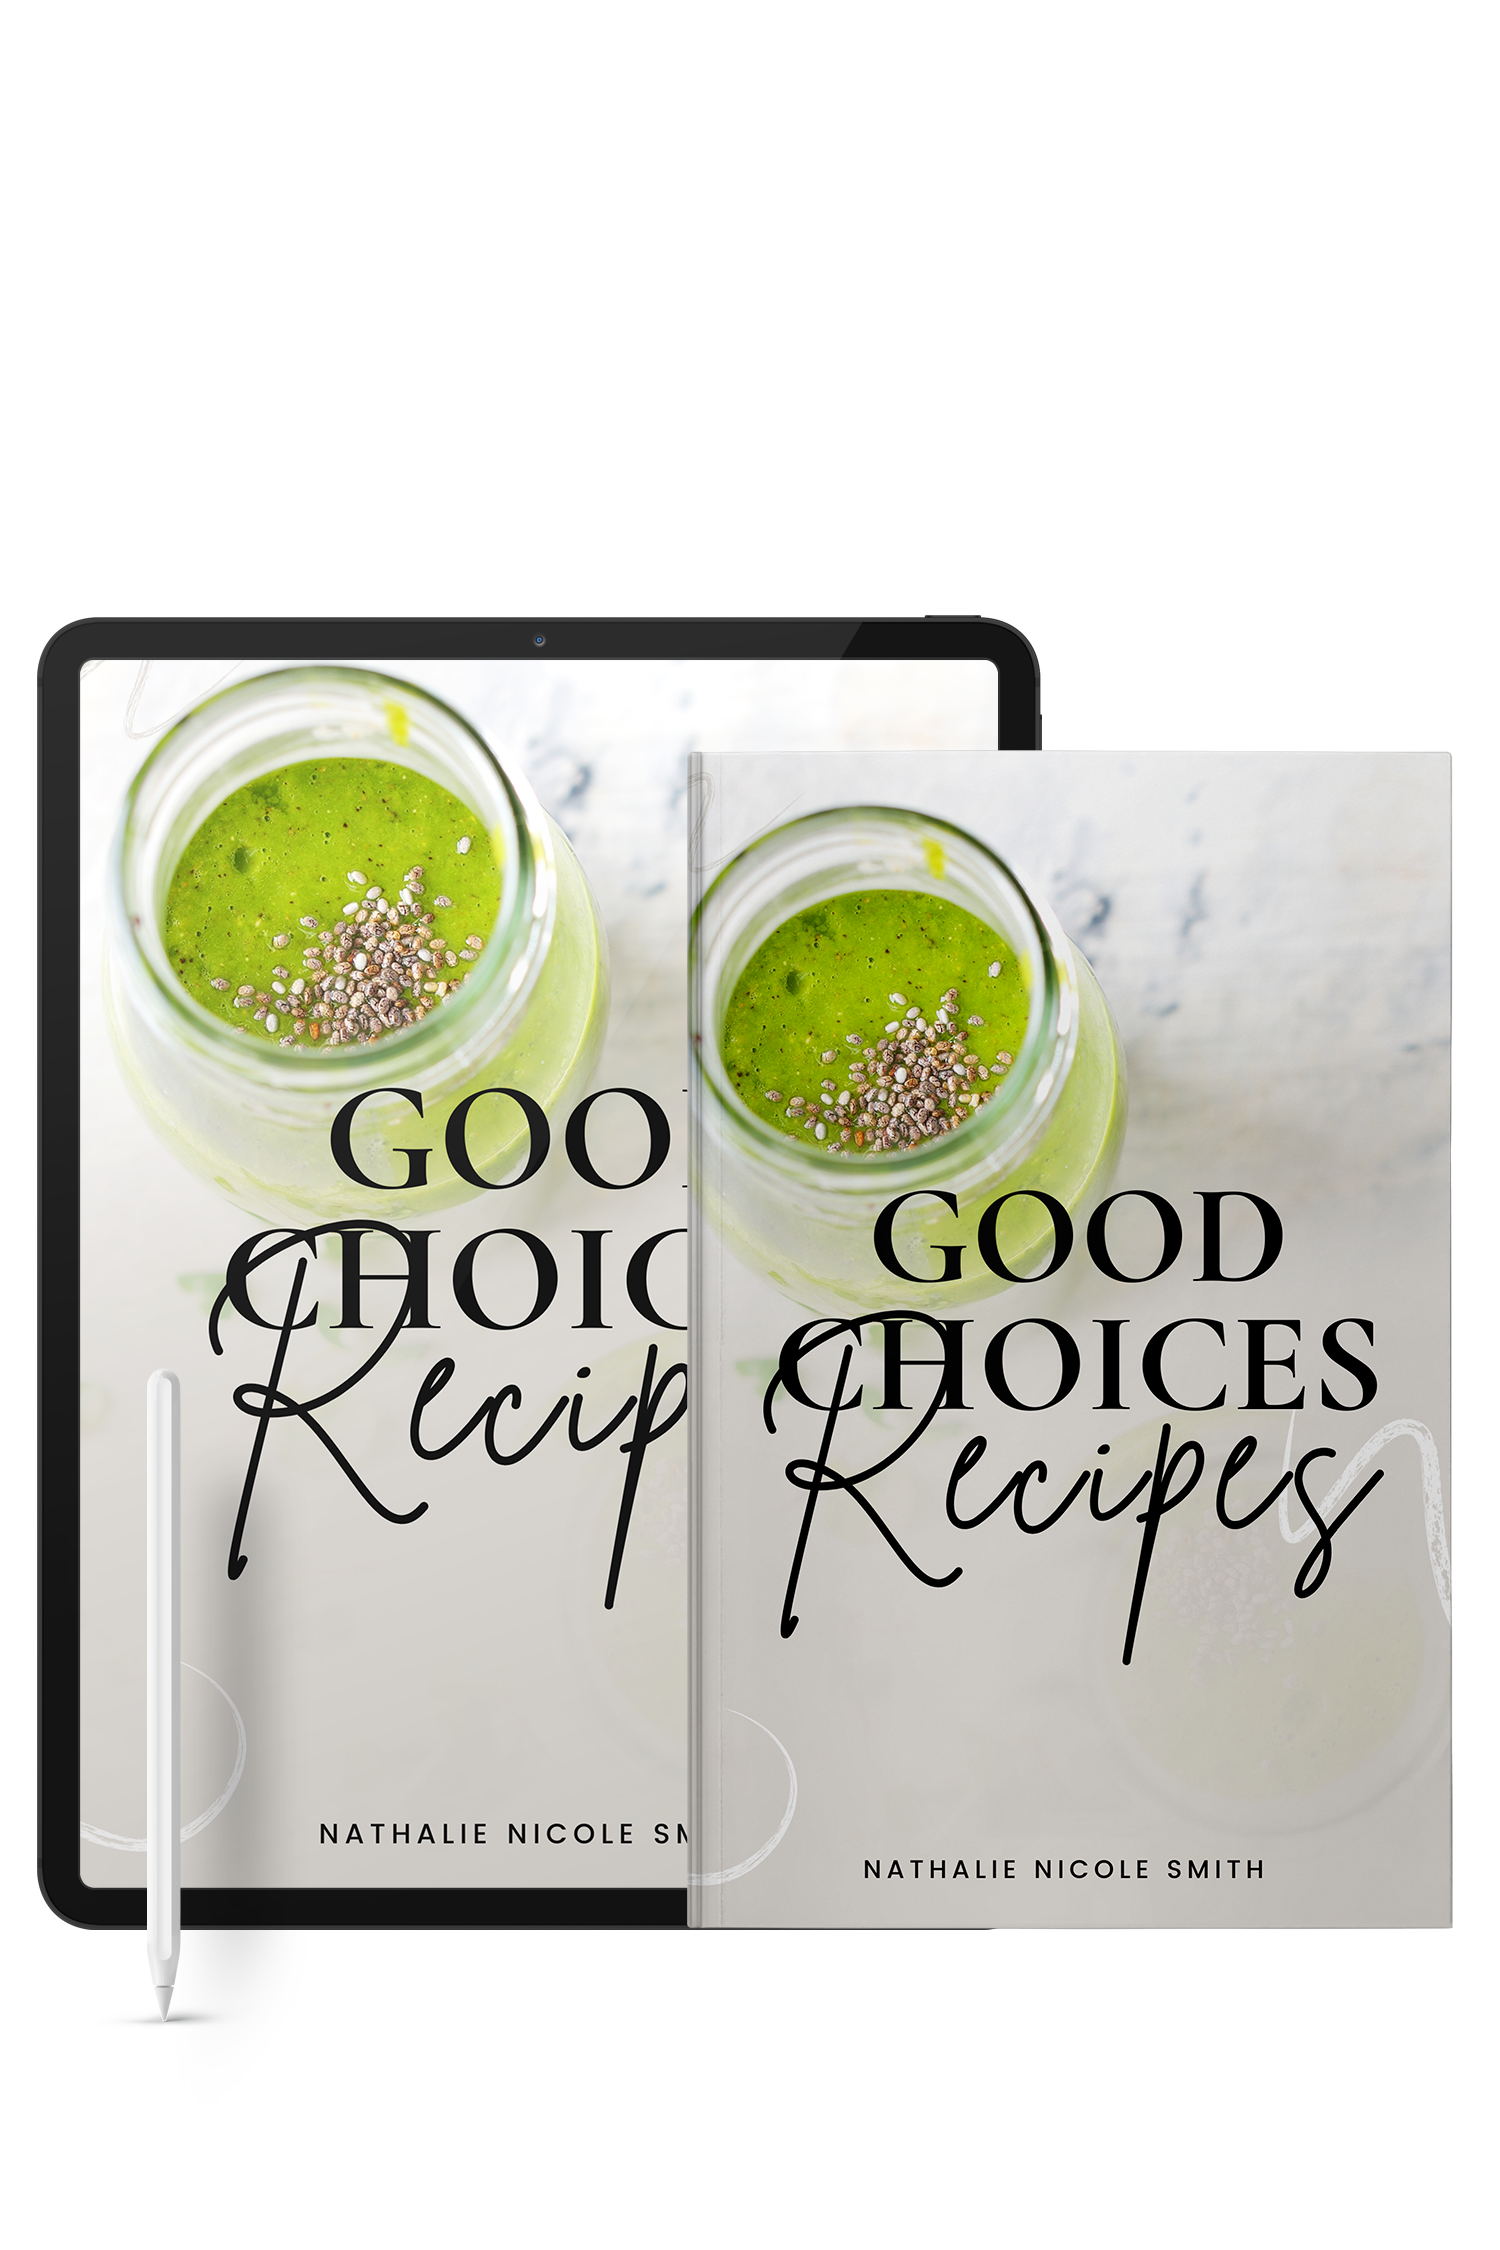 Good Choices Recipes (e-Book)